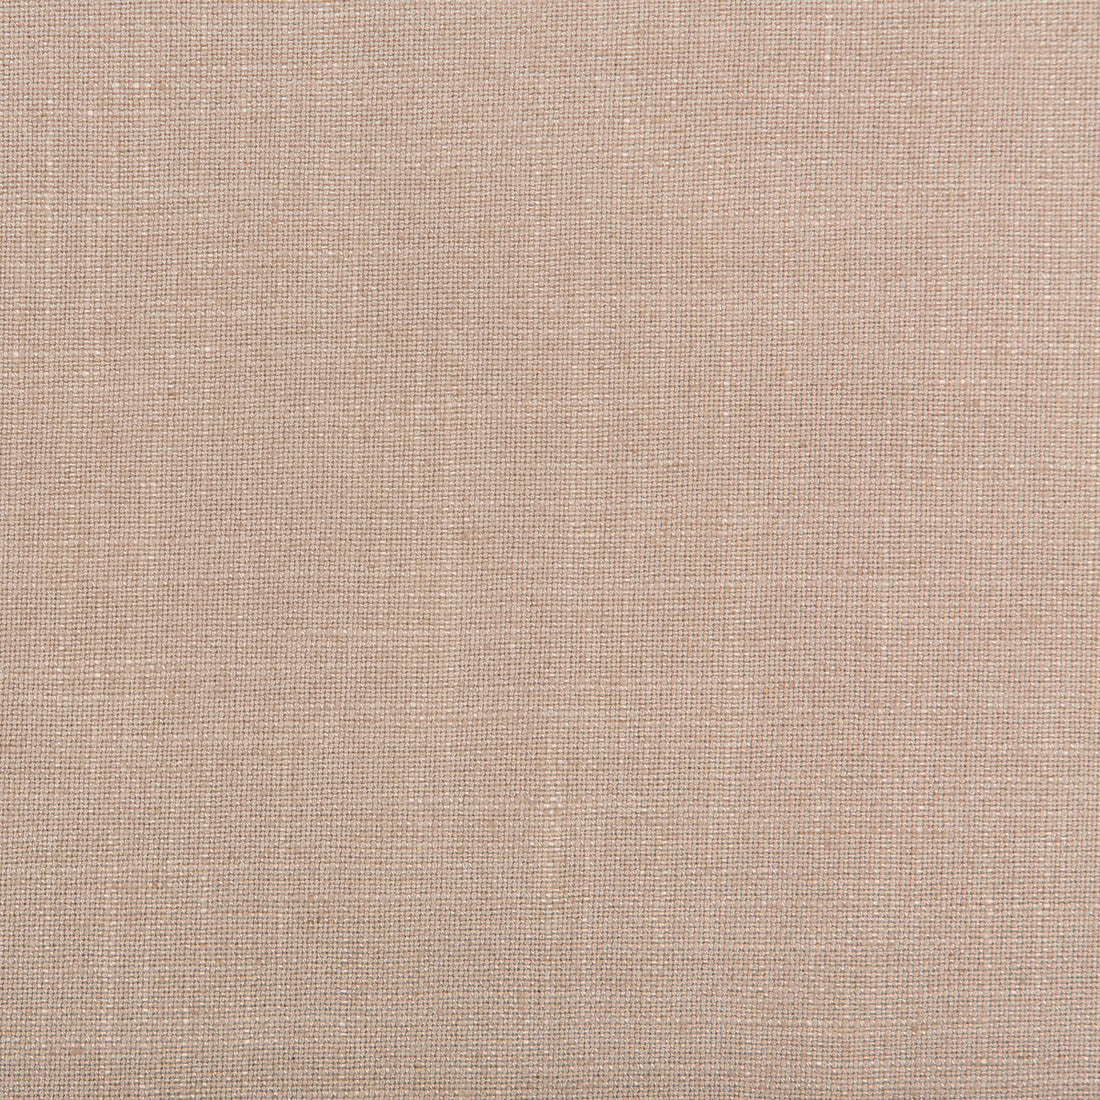 Aura fabric in lavender color - pattern 35520.710.0 - by Kravet Design